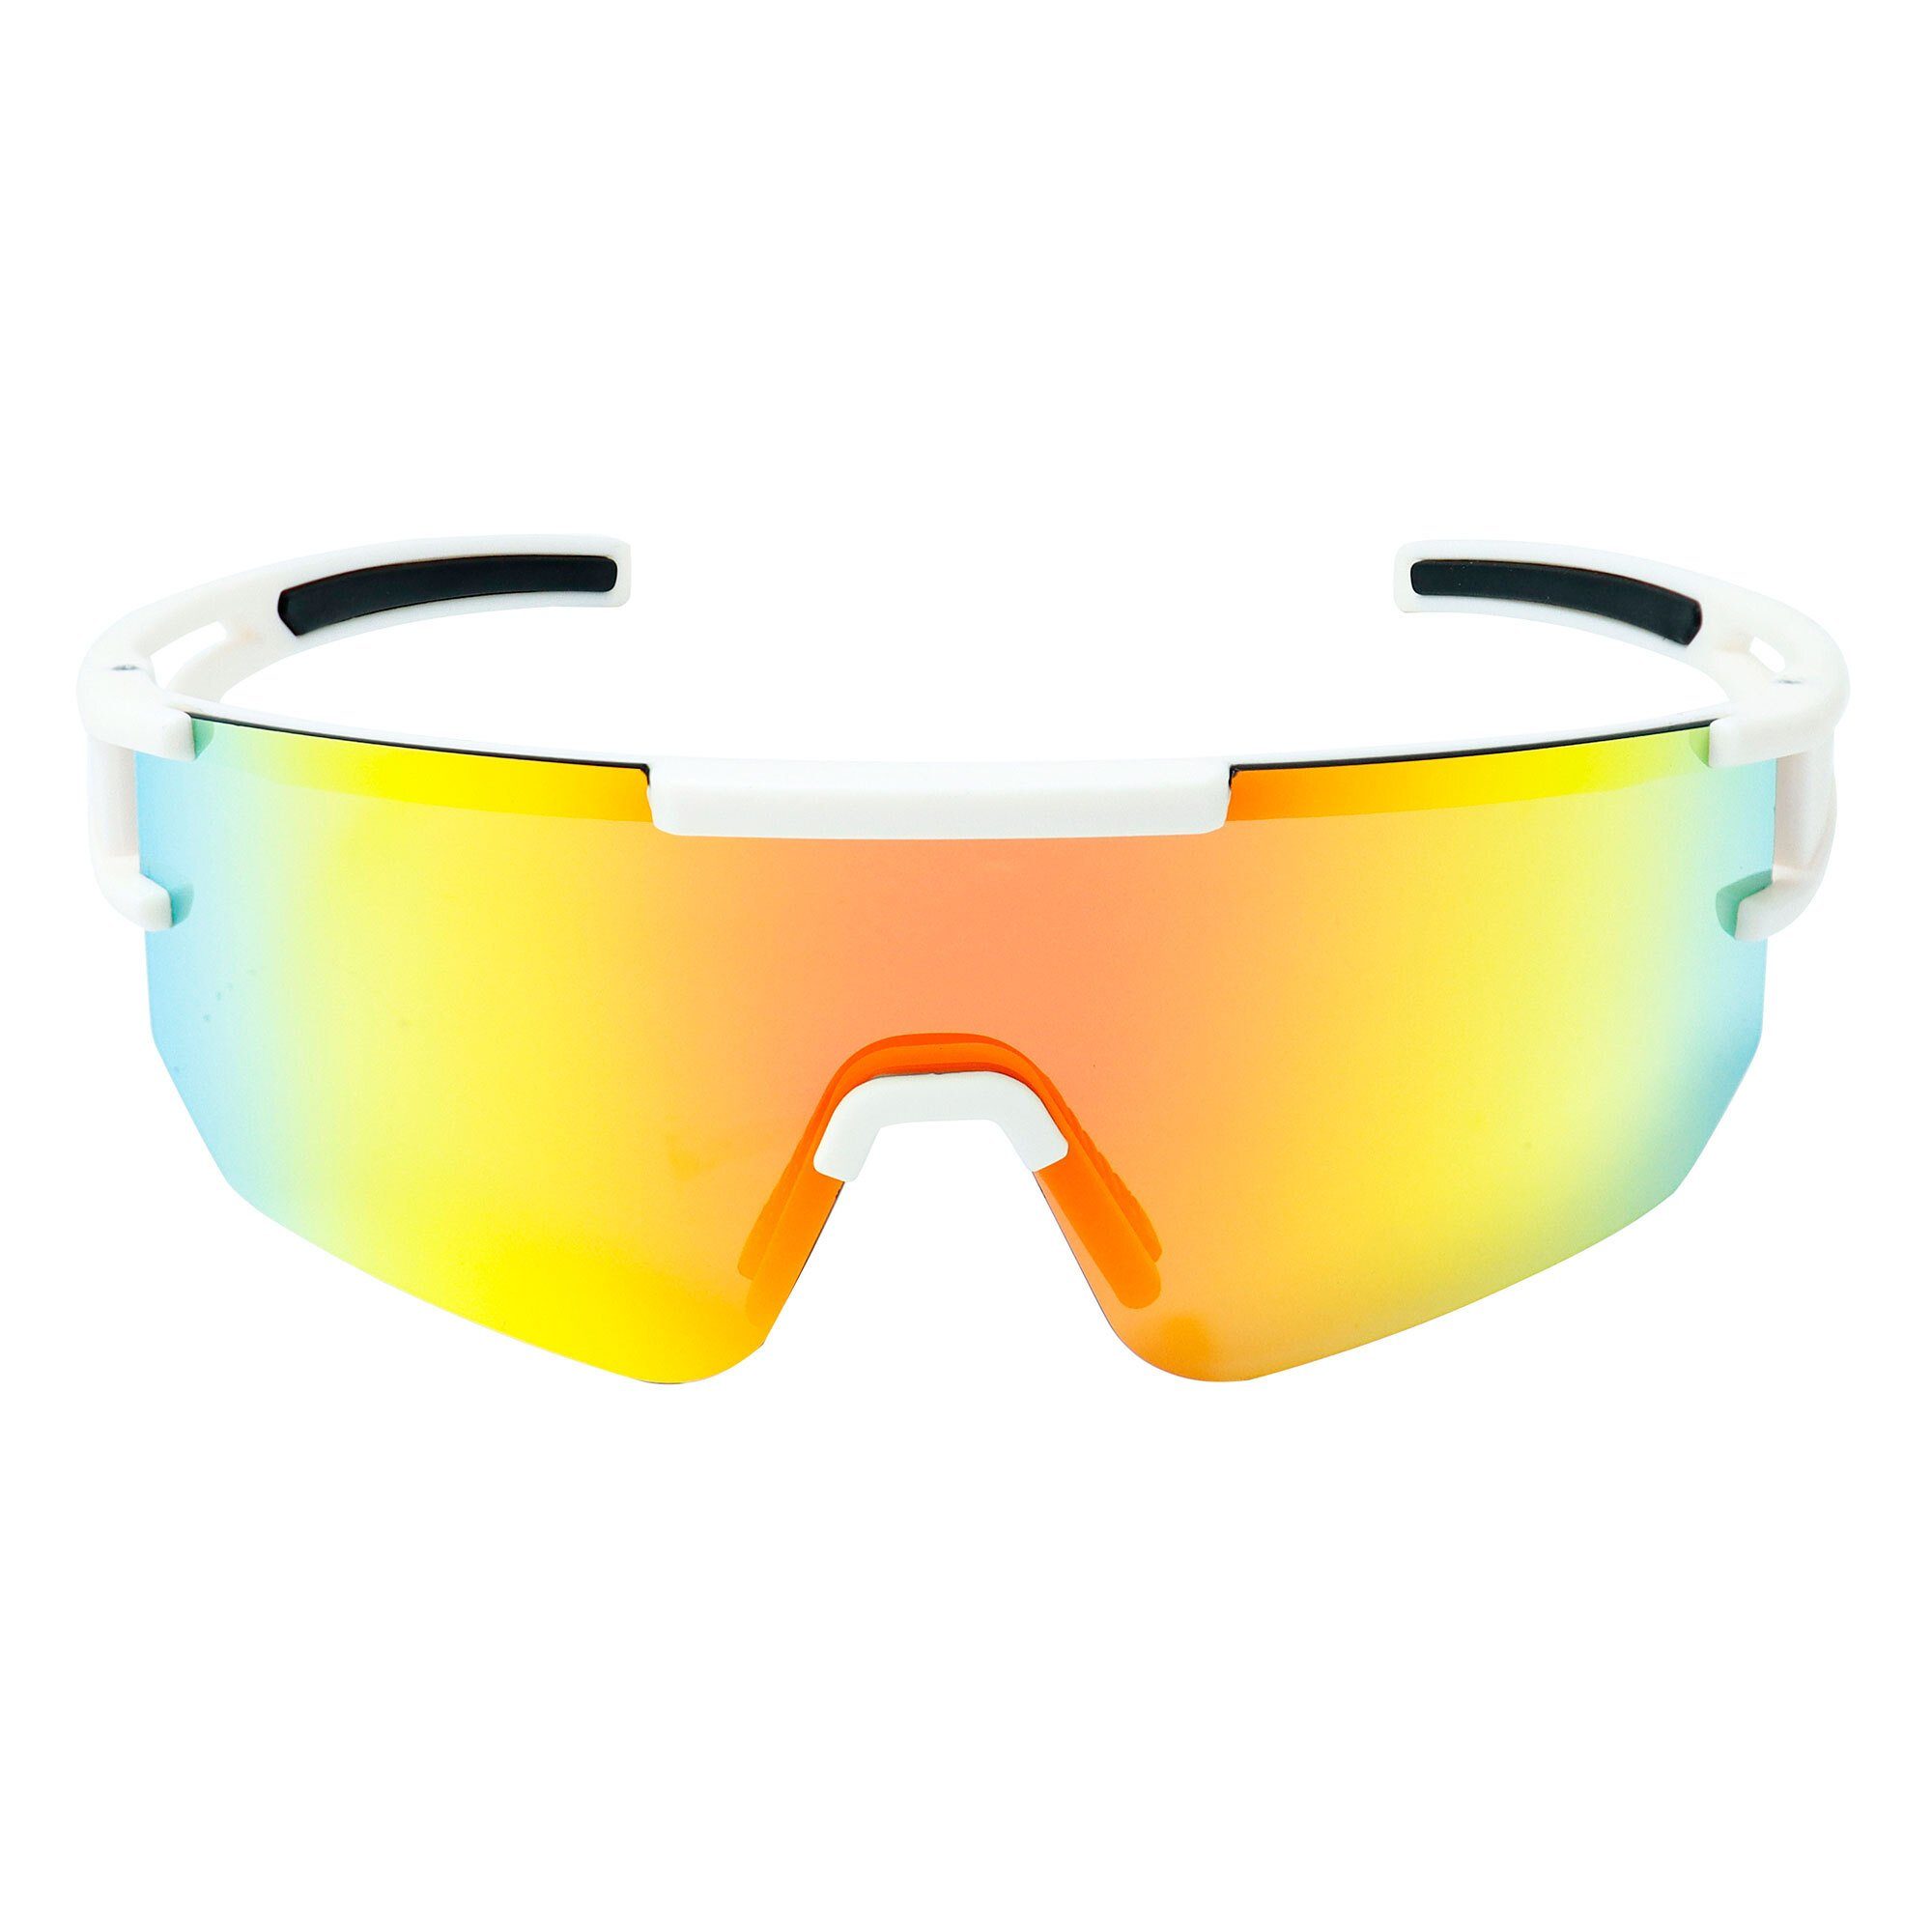 Sportbrille Sicht YEAZ red, SUNSPARK Schutz bei white/mango creme Guter sport-sonnenbrille optimierter